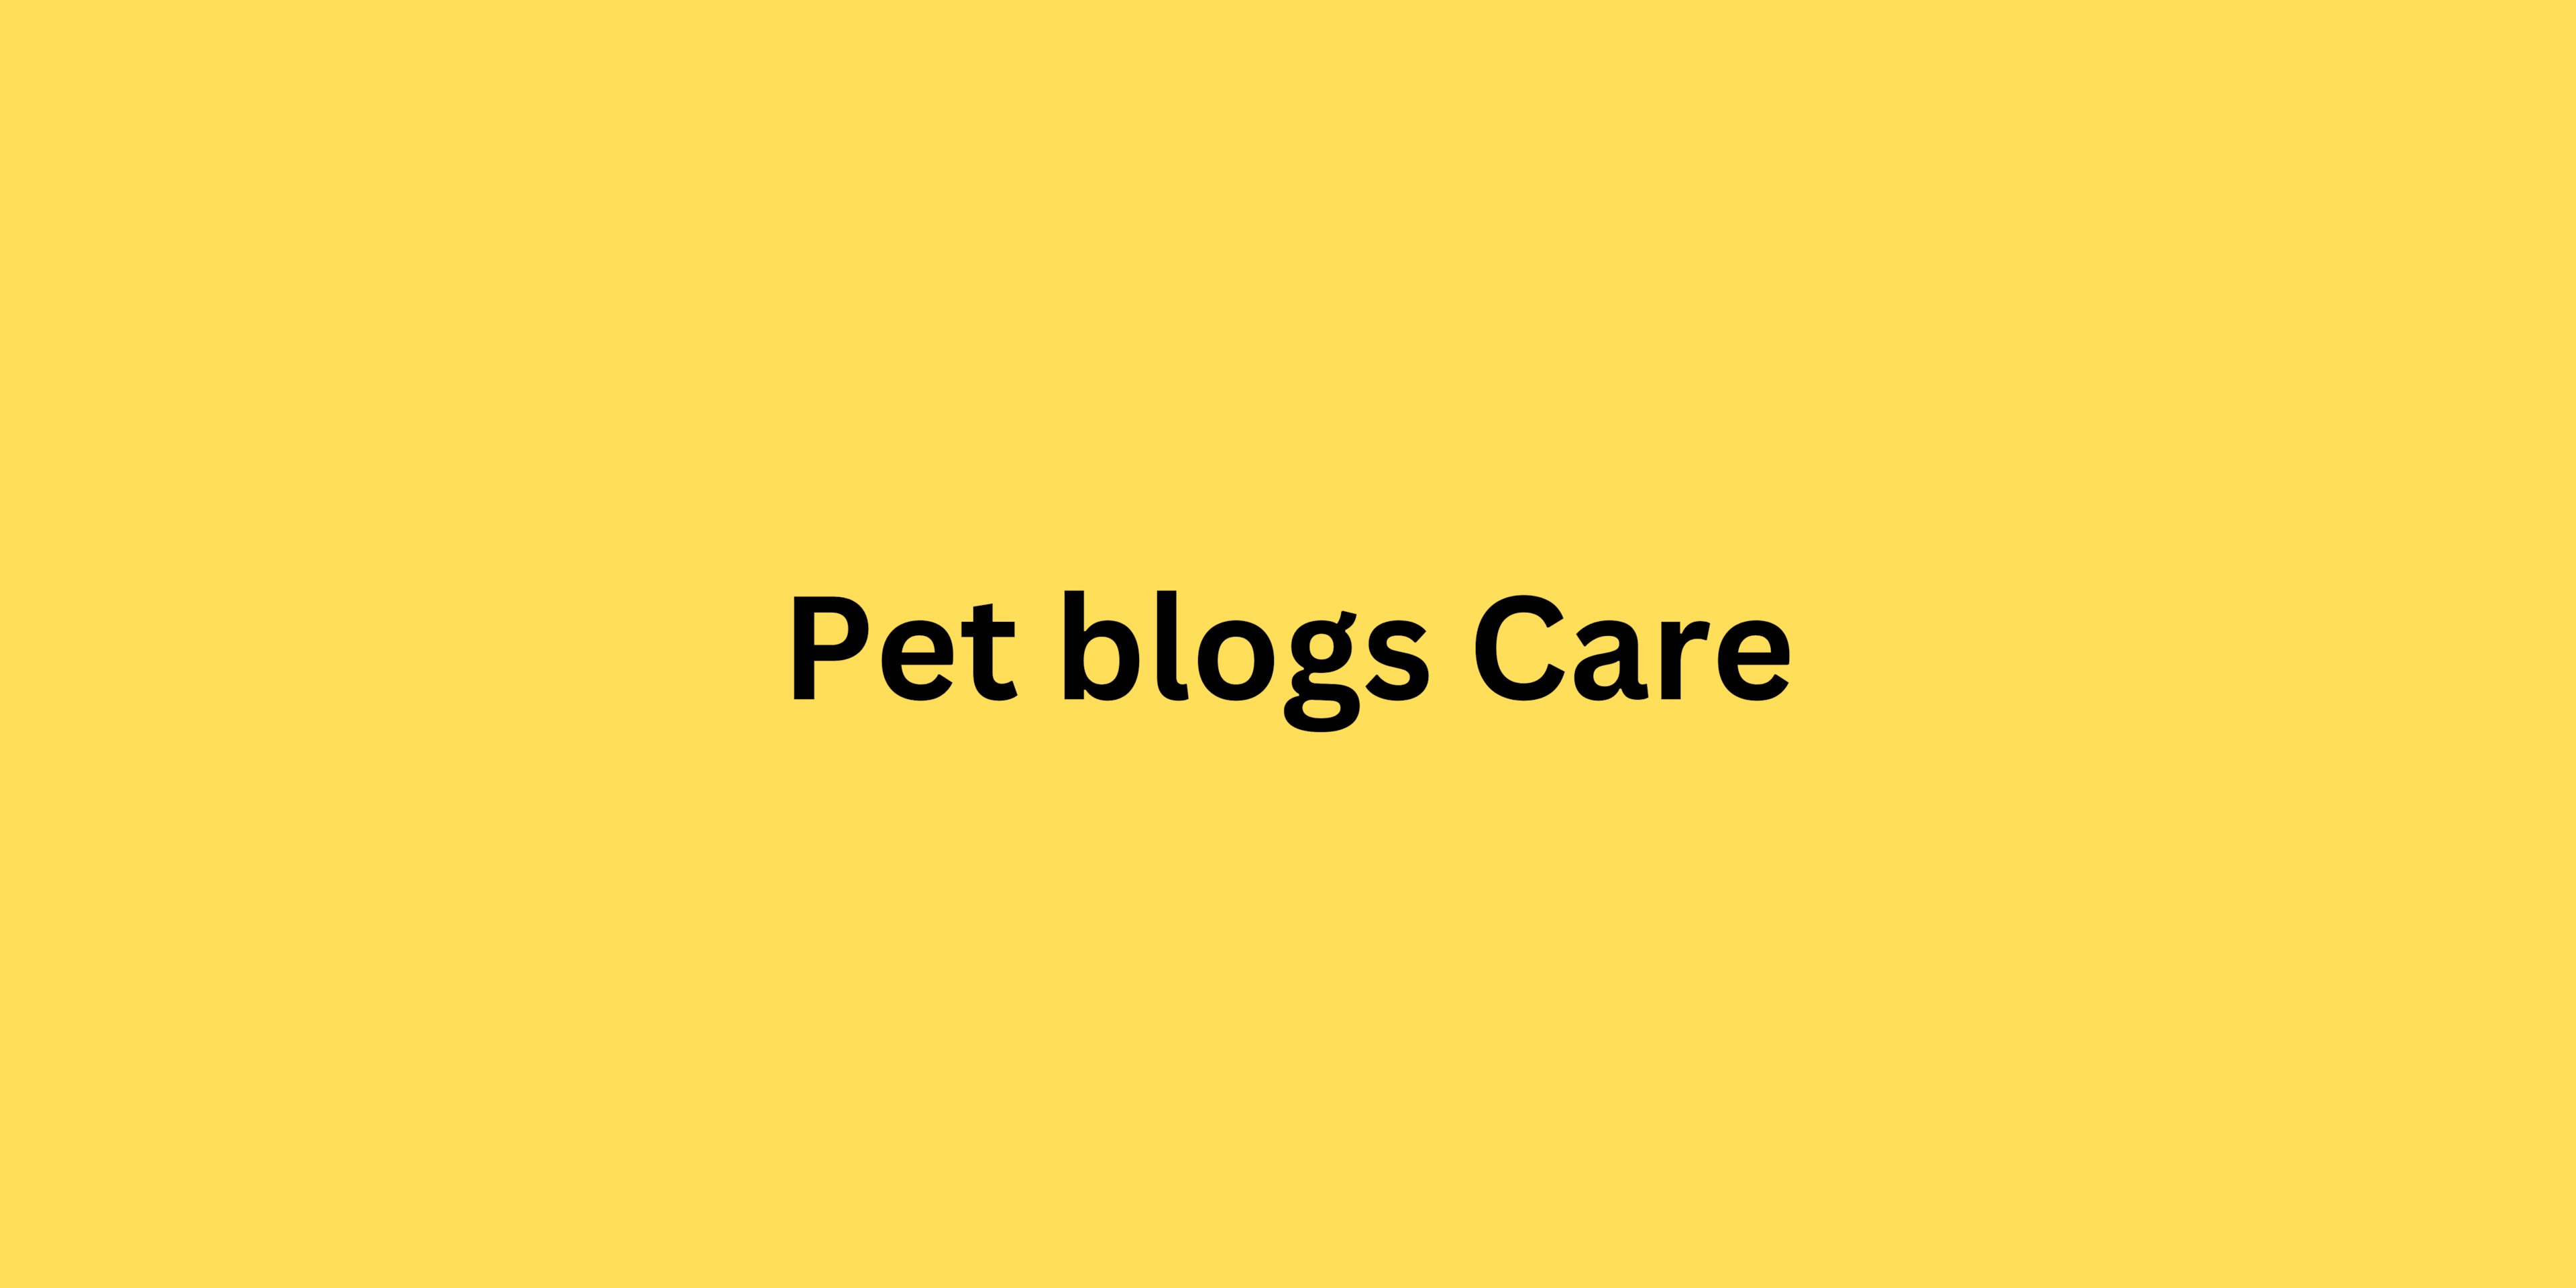 Pet blogs Care